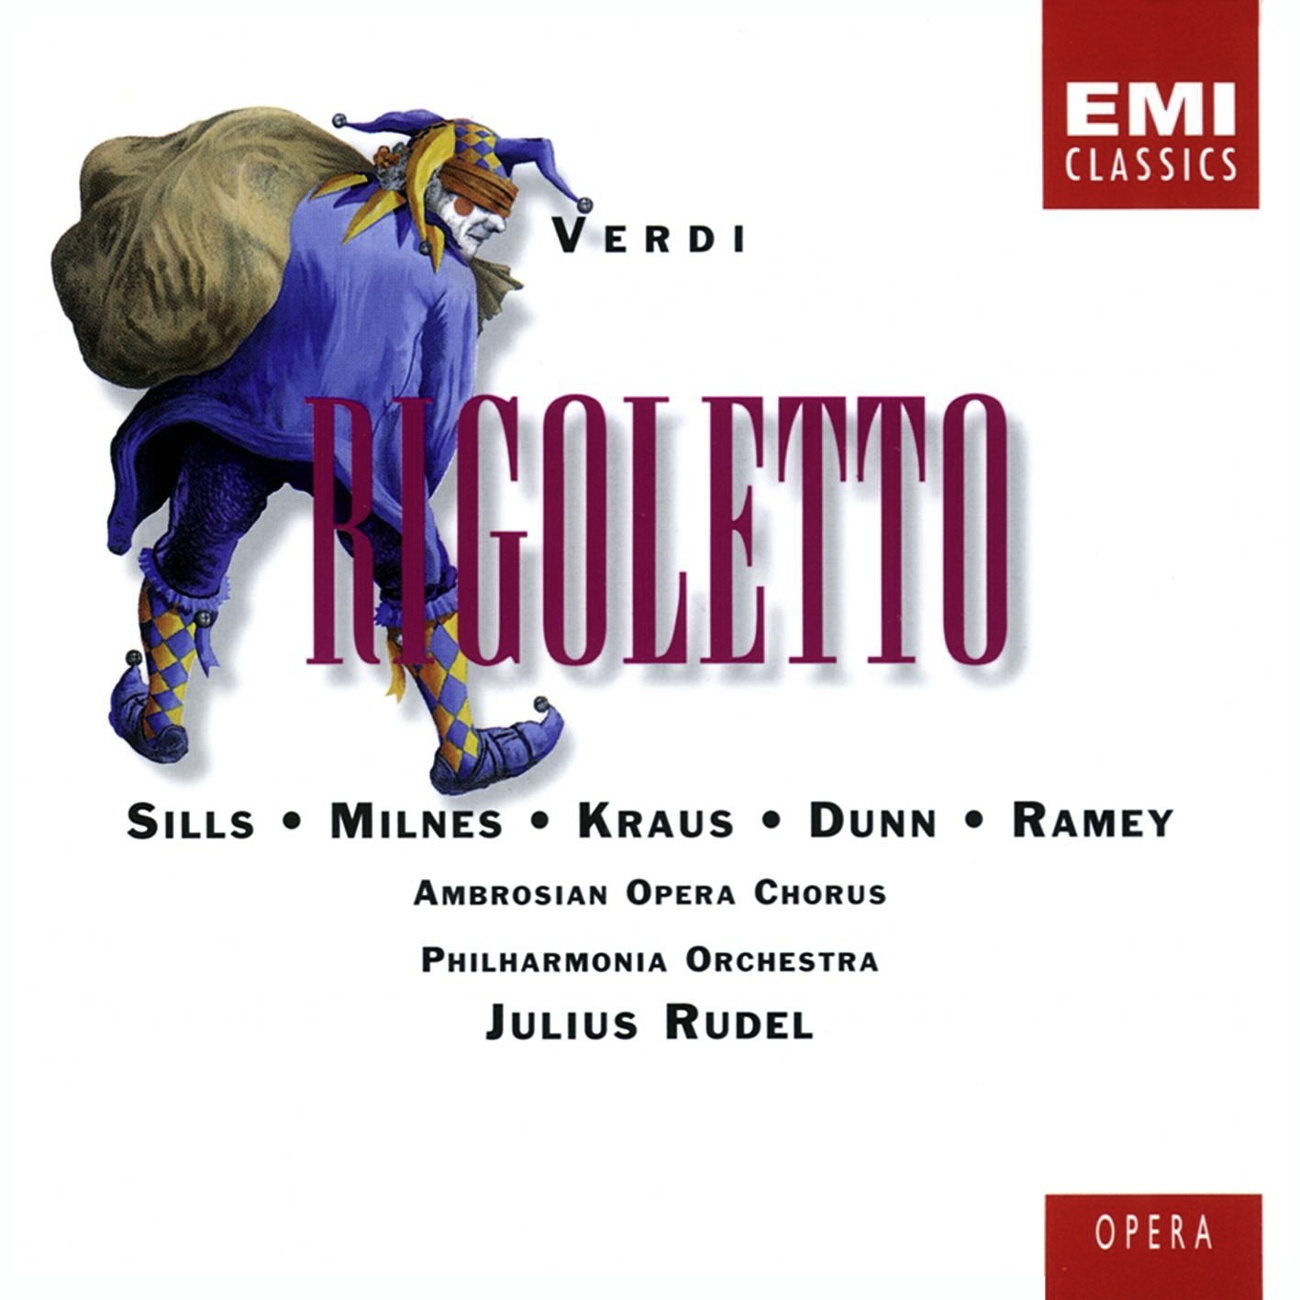 Rigoletto (1996 Digital Remaster), Act 2: Possente amor ... Oh qual pensiero